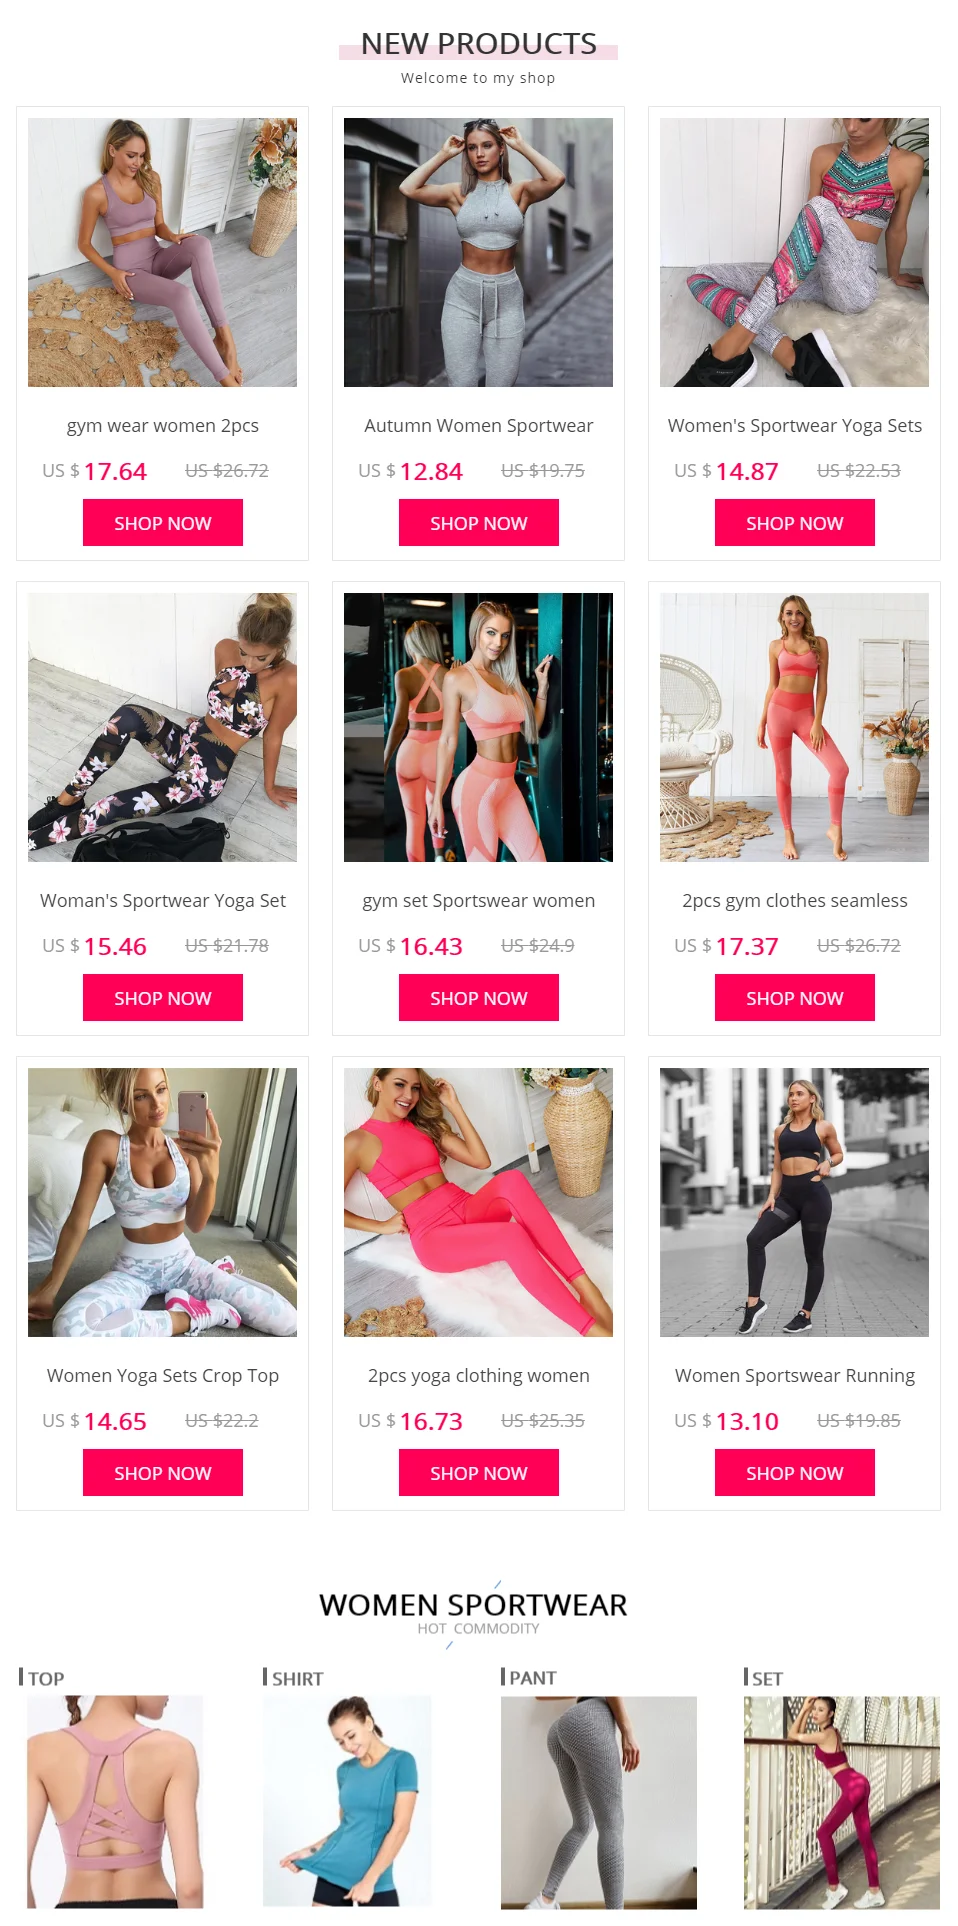 Женская спортивная одежда, розовый бесшовный комплект для спортзала, укороченный топ, бюстгальтер, подкладка в полоску, эластичная высокая талия, комплект для йоги, Экипировка для йоги, фитнес-комплект, одежда для спортзала